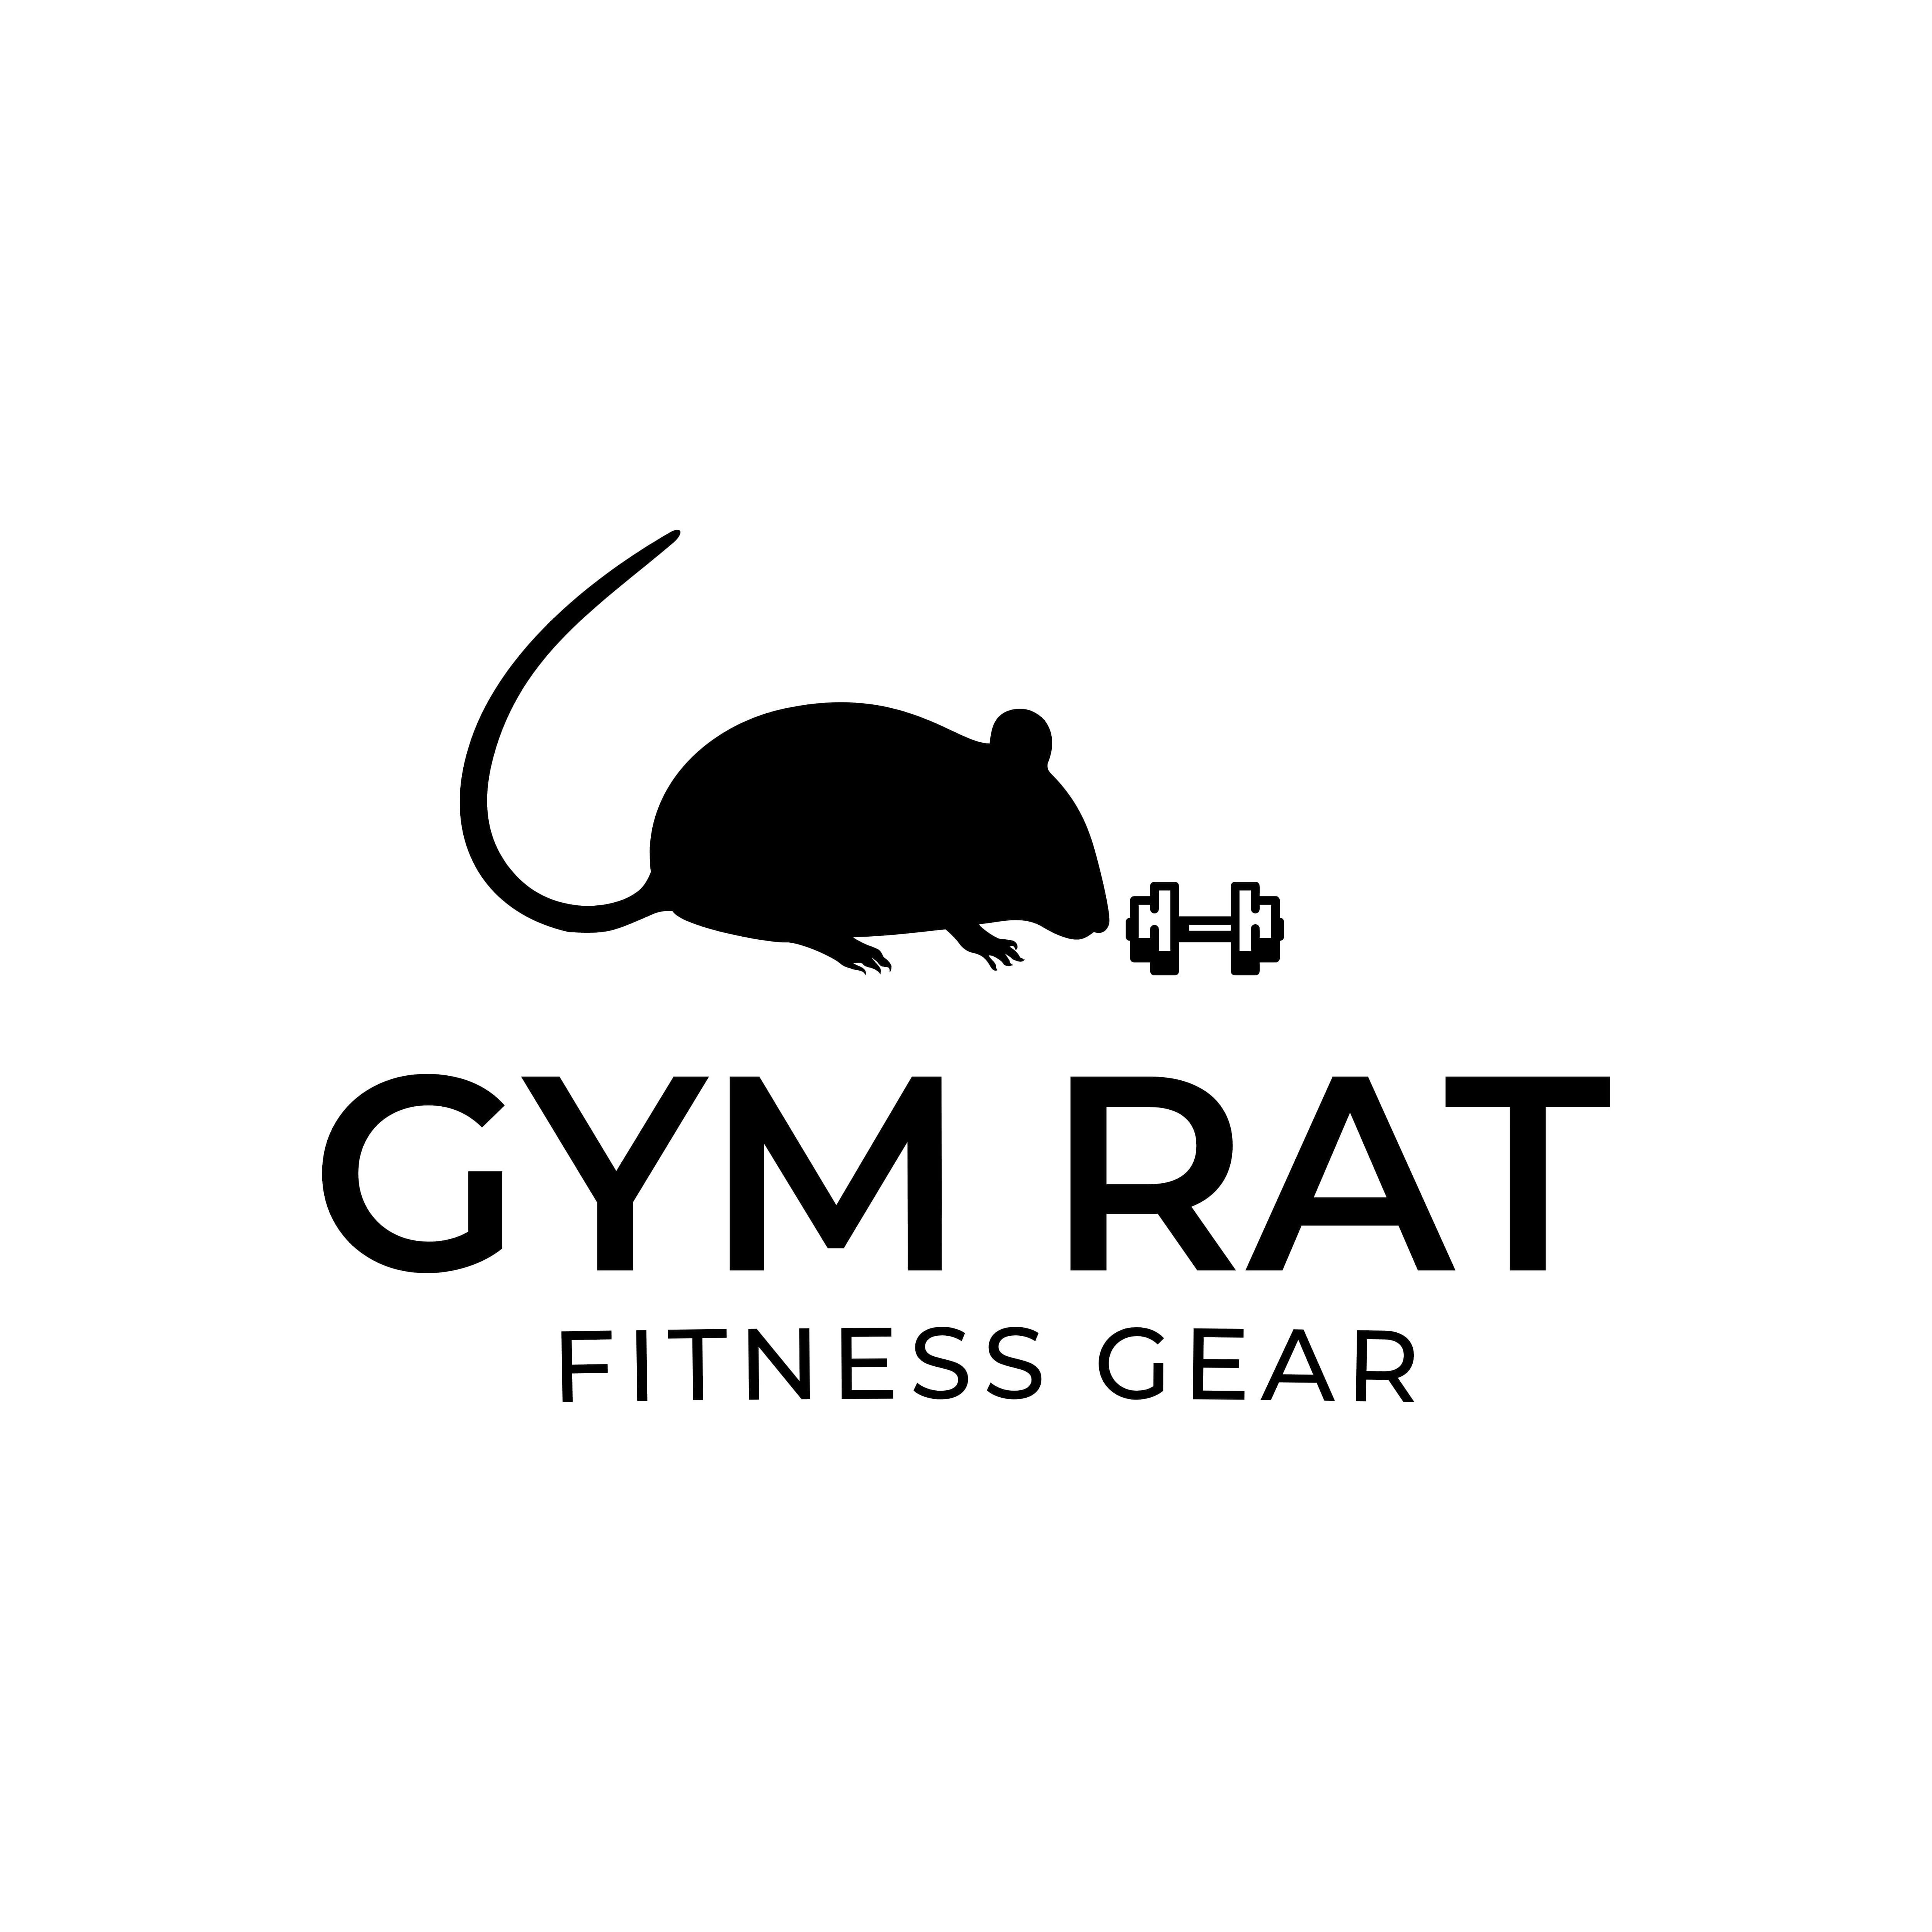 Literal gym rat